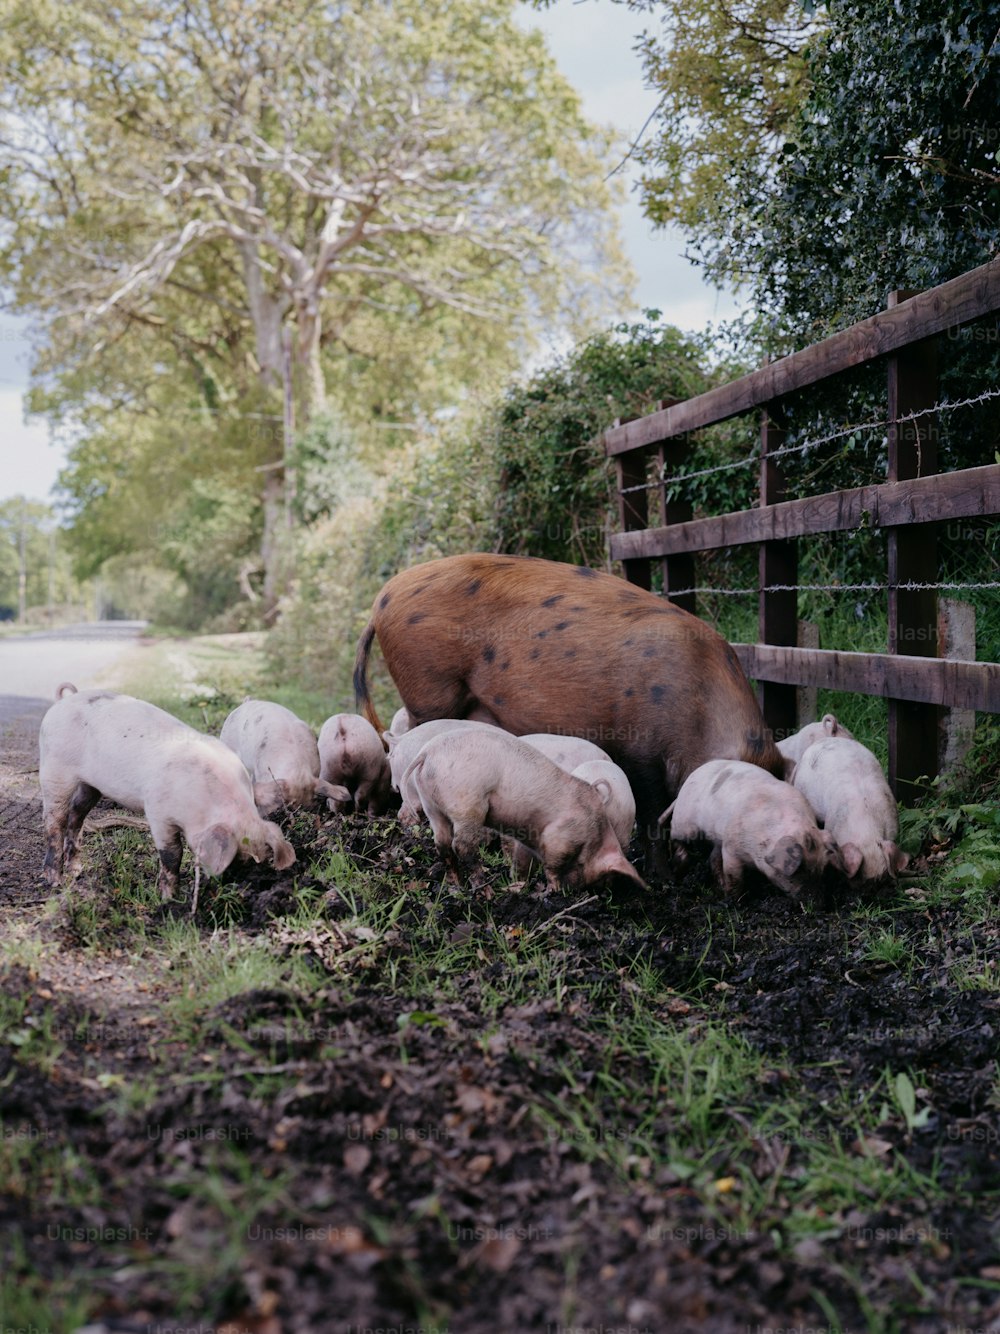 울타리가 쳐진 지역에 있는 돼지와 아기 돼지